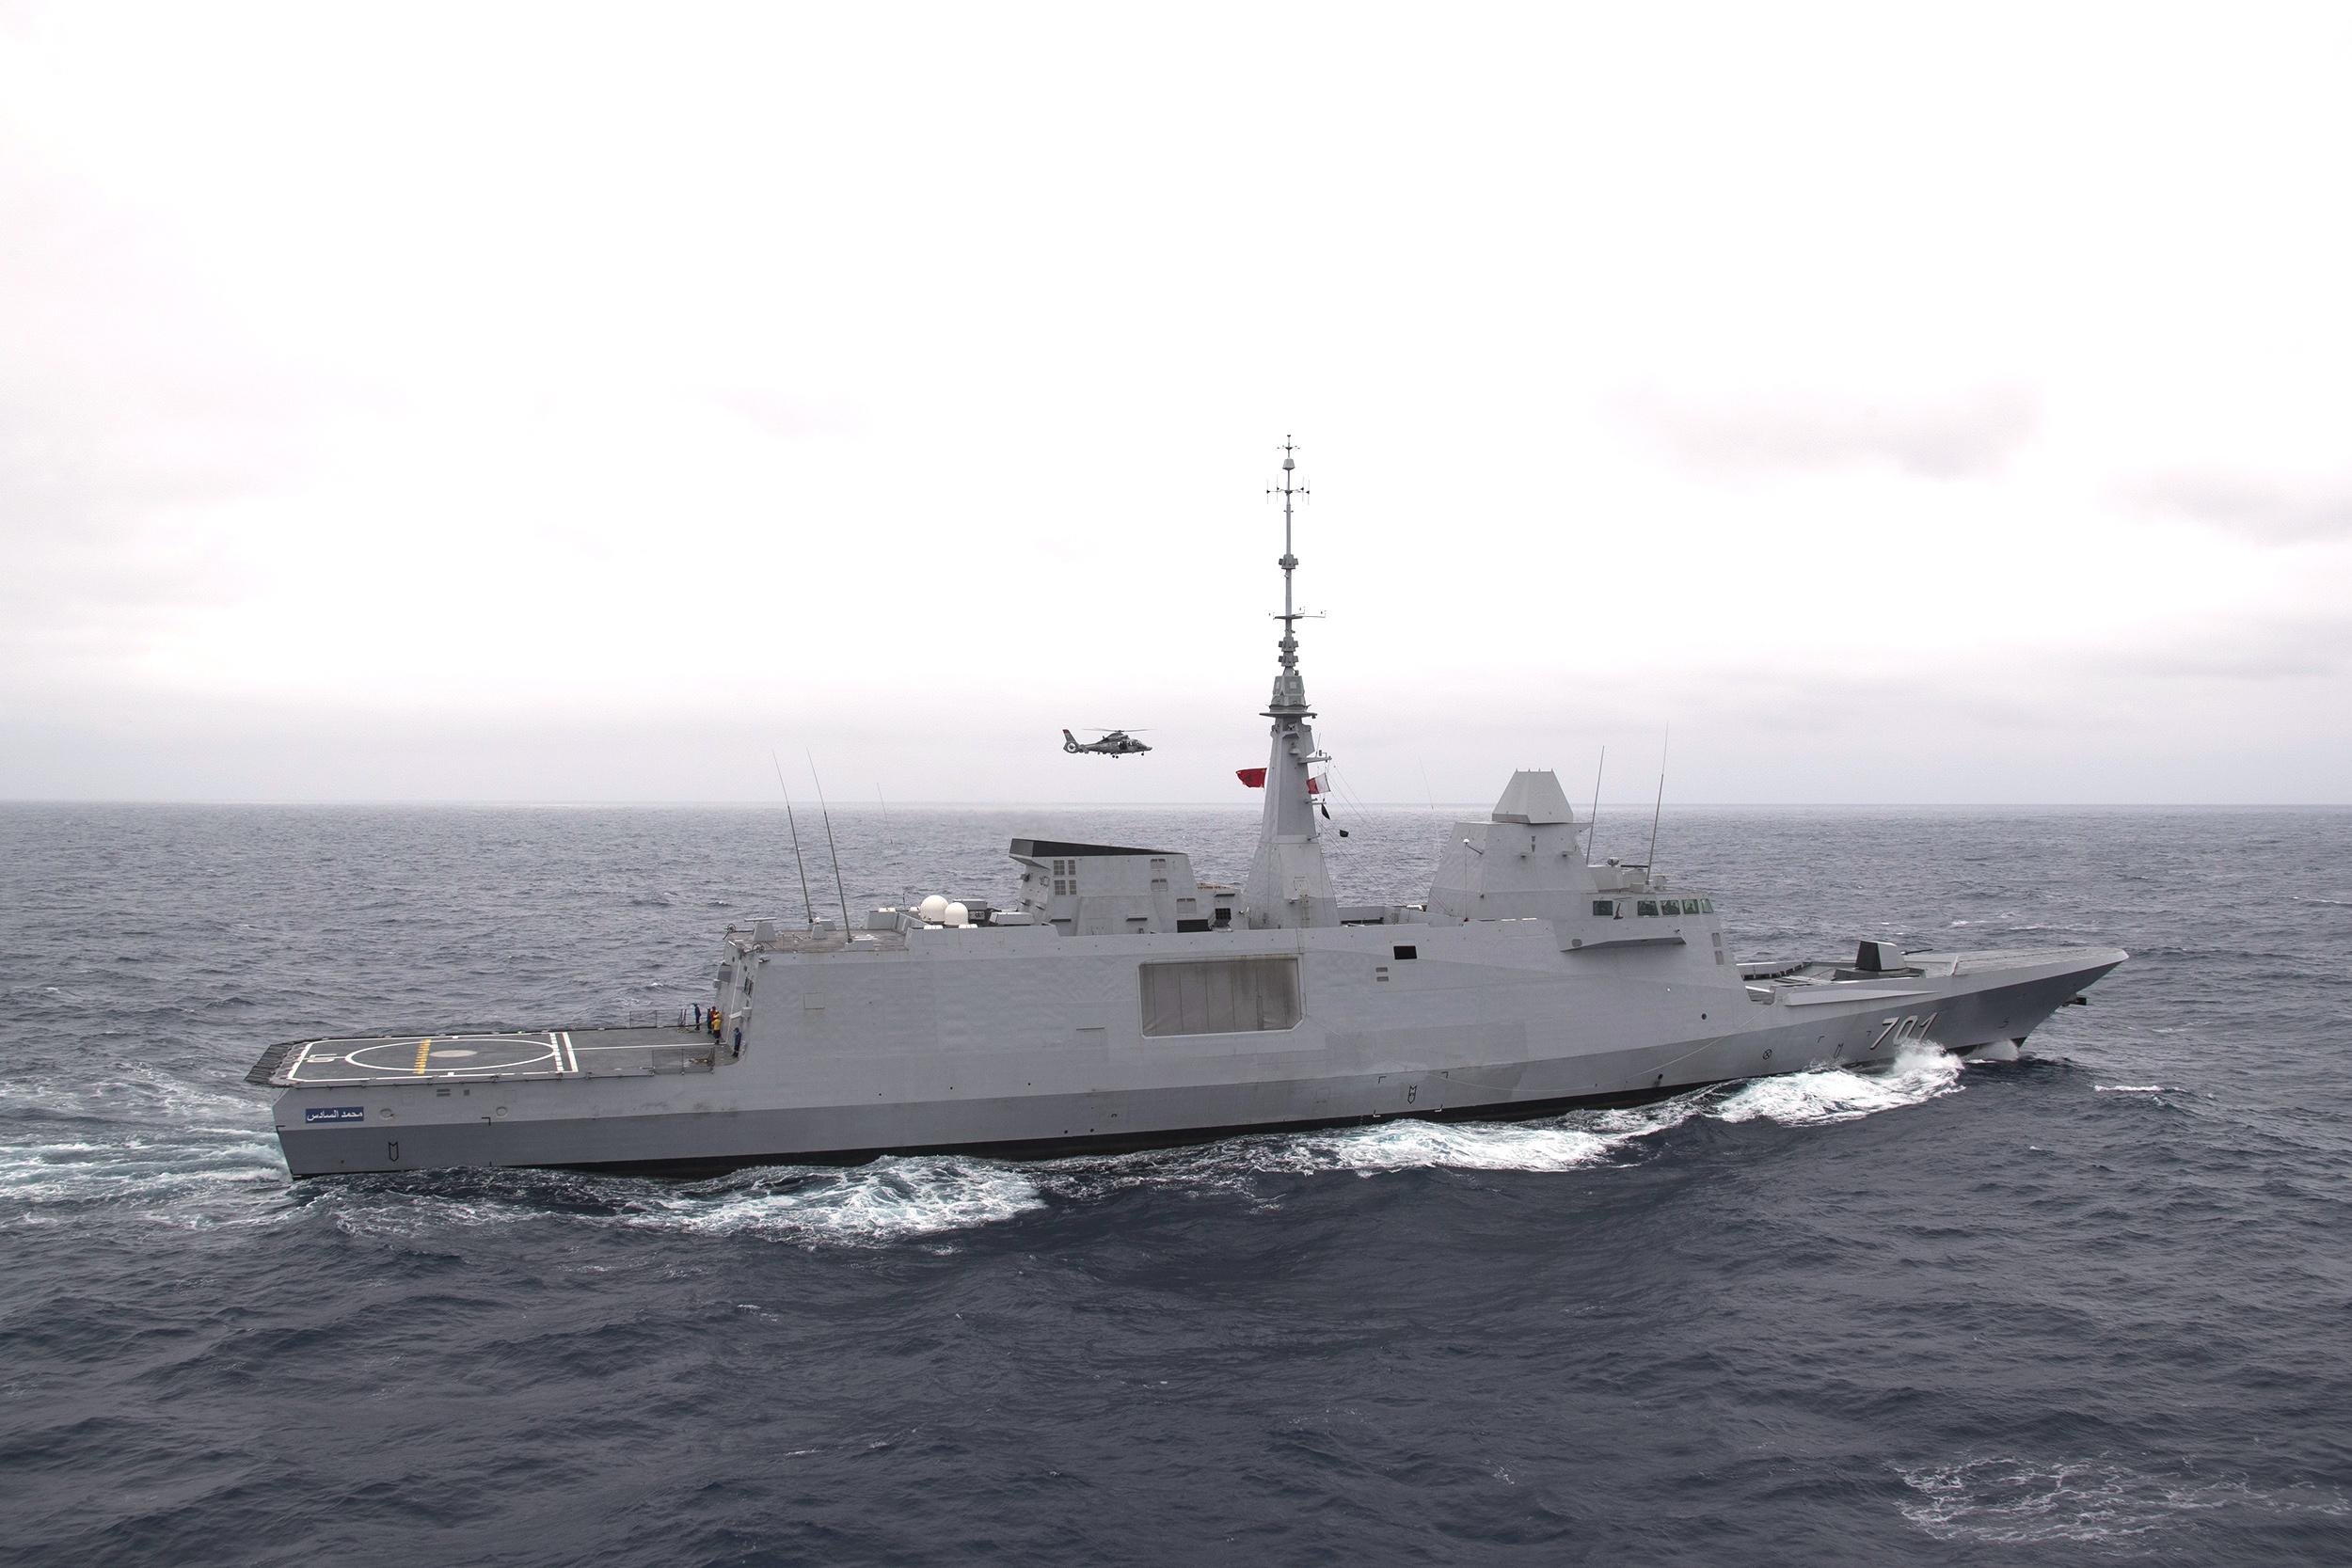 Royal_Moroccan_Navy_frigate_Mohammed_VI_%28701%29_underway_in_the_Atlantic_Ocean_on_25_April_2018_%28180425-N-GC347-1193%29.JPG